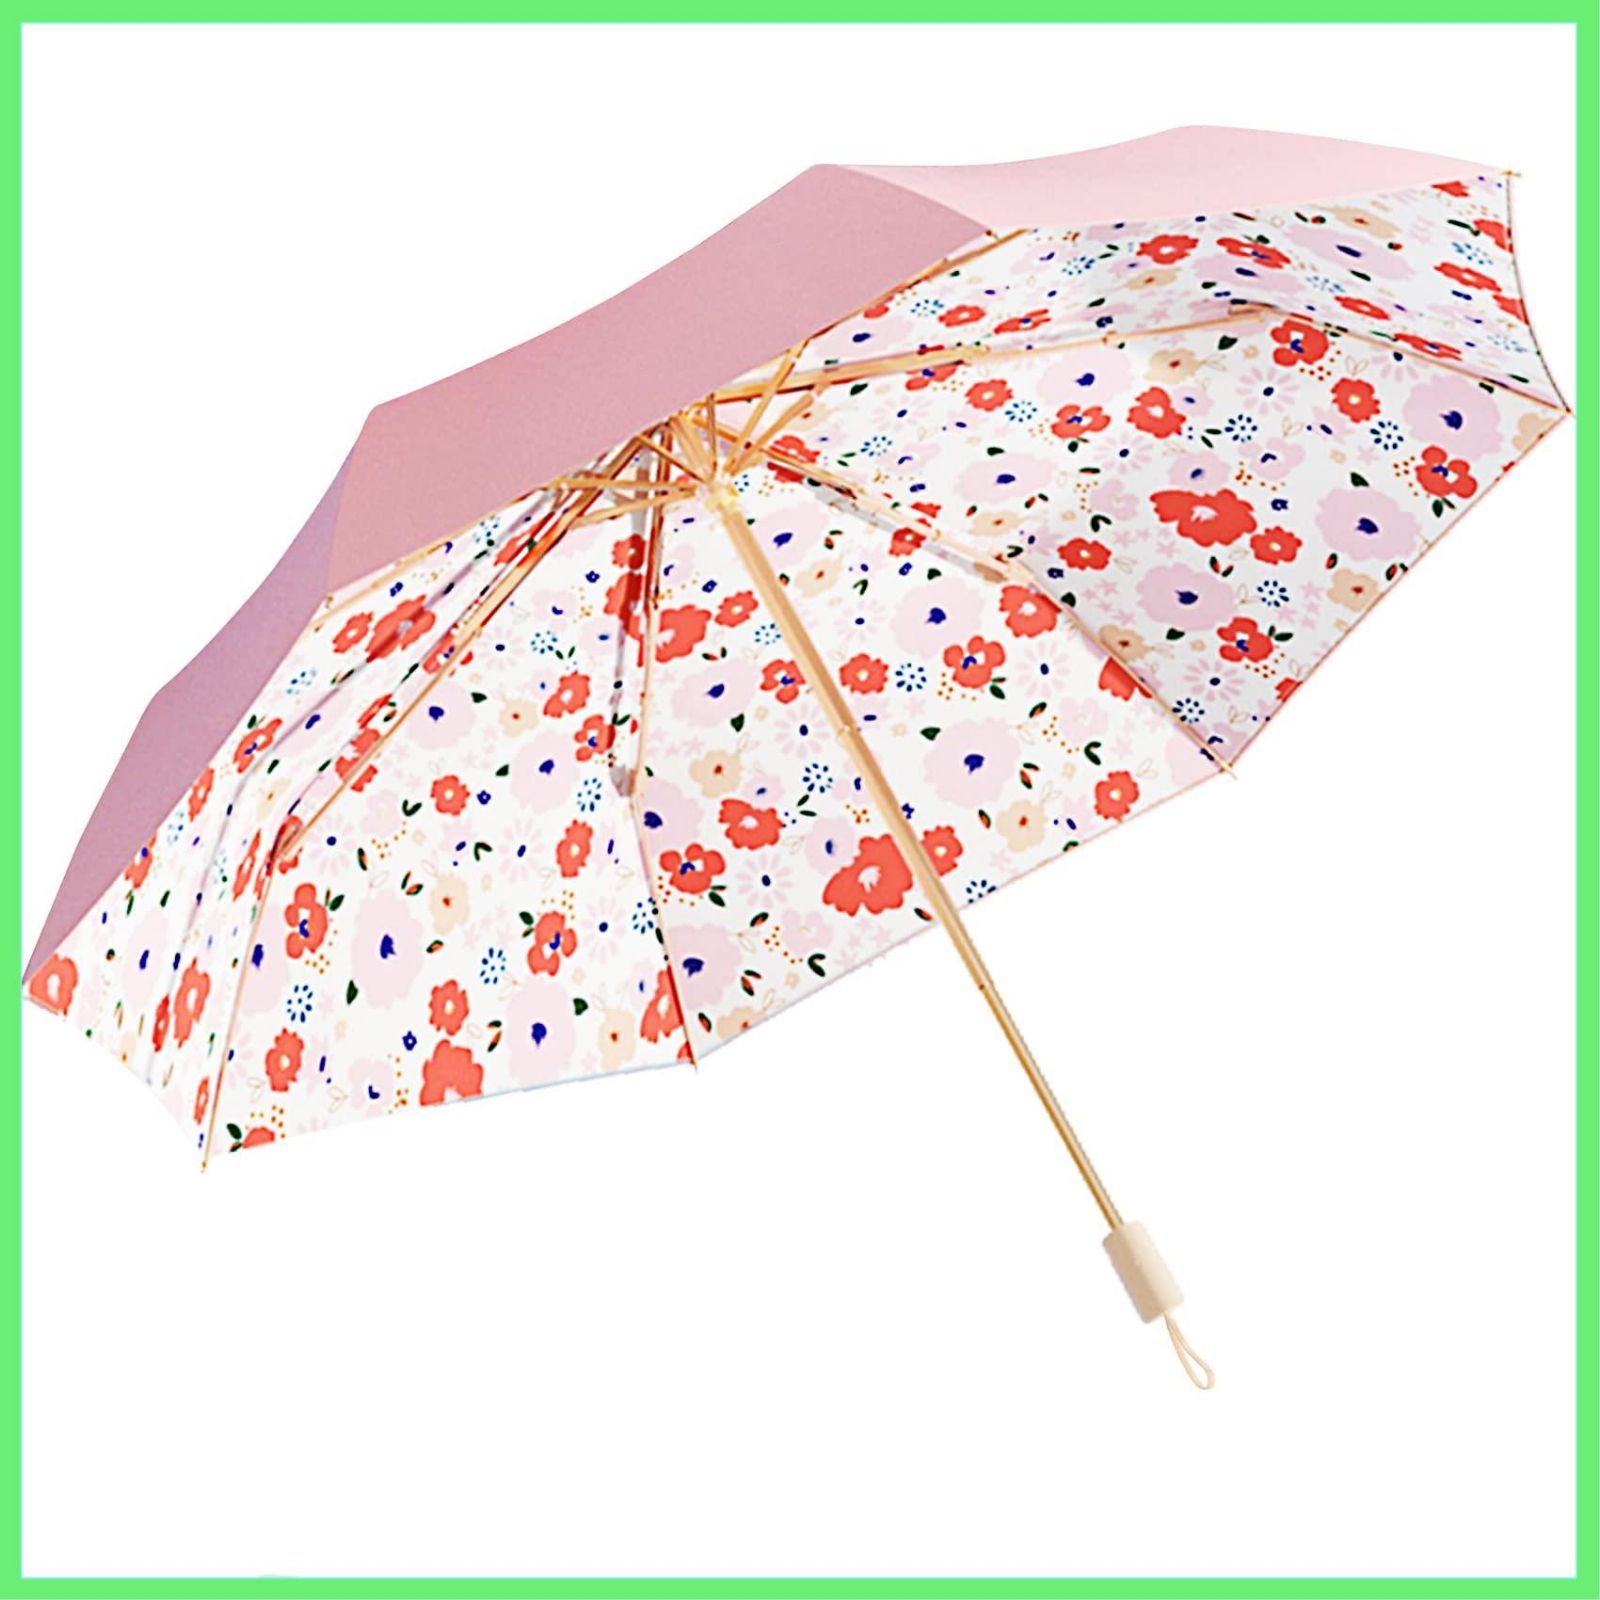 【色:ピンク】Moorrlii 二重日傘 軽量 レディース コンパクト 折り畳み